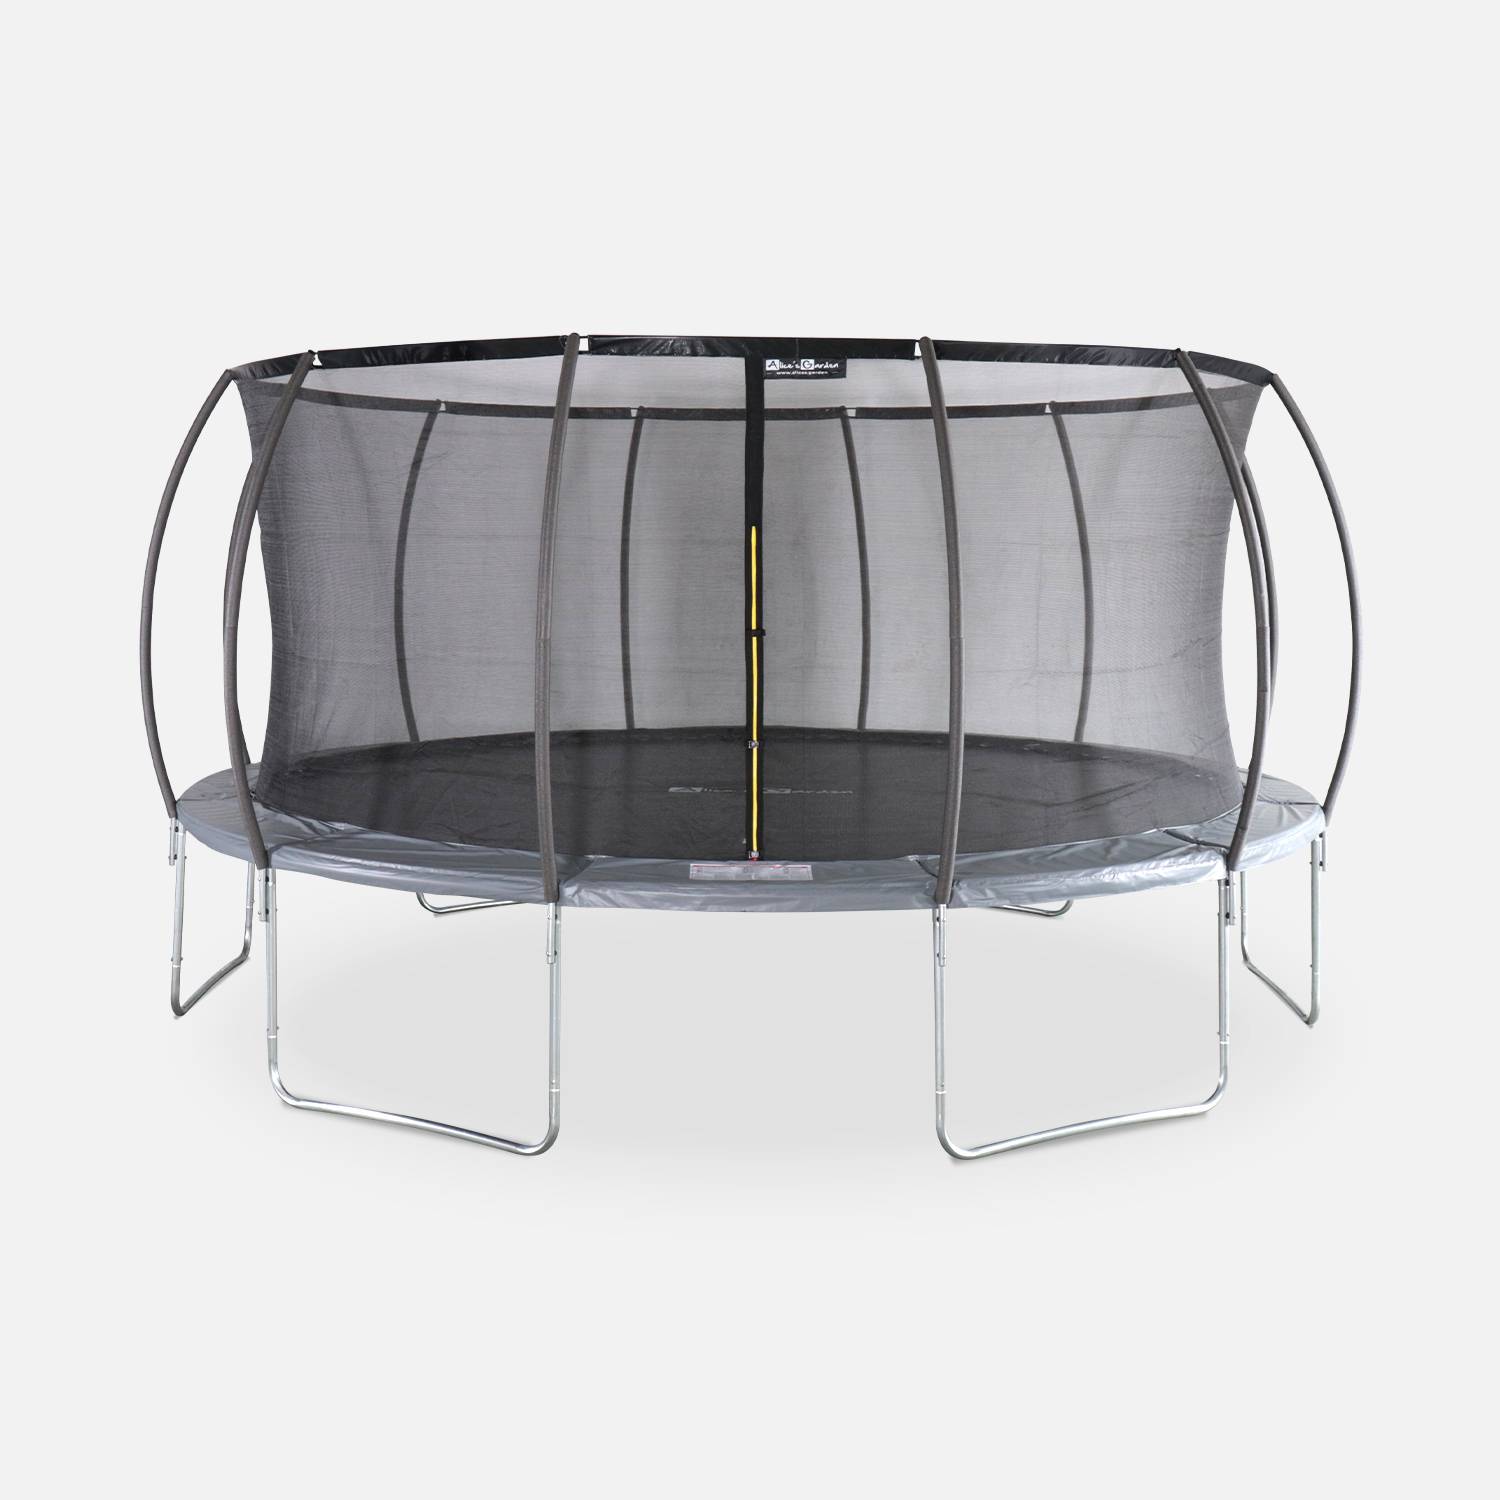 Trampolim redondo Ø 490cm cinzento com rede de proteção interior - Jupiter Inner - Novo modelo - trampolim de jardim 4,90m 490 cm |Design | Qualidade PRO | Normas UE Photo1